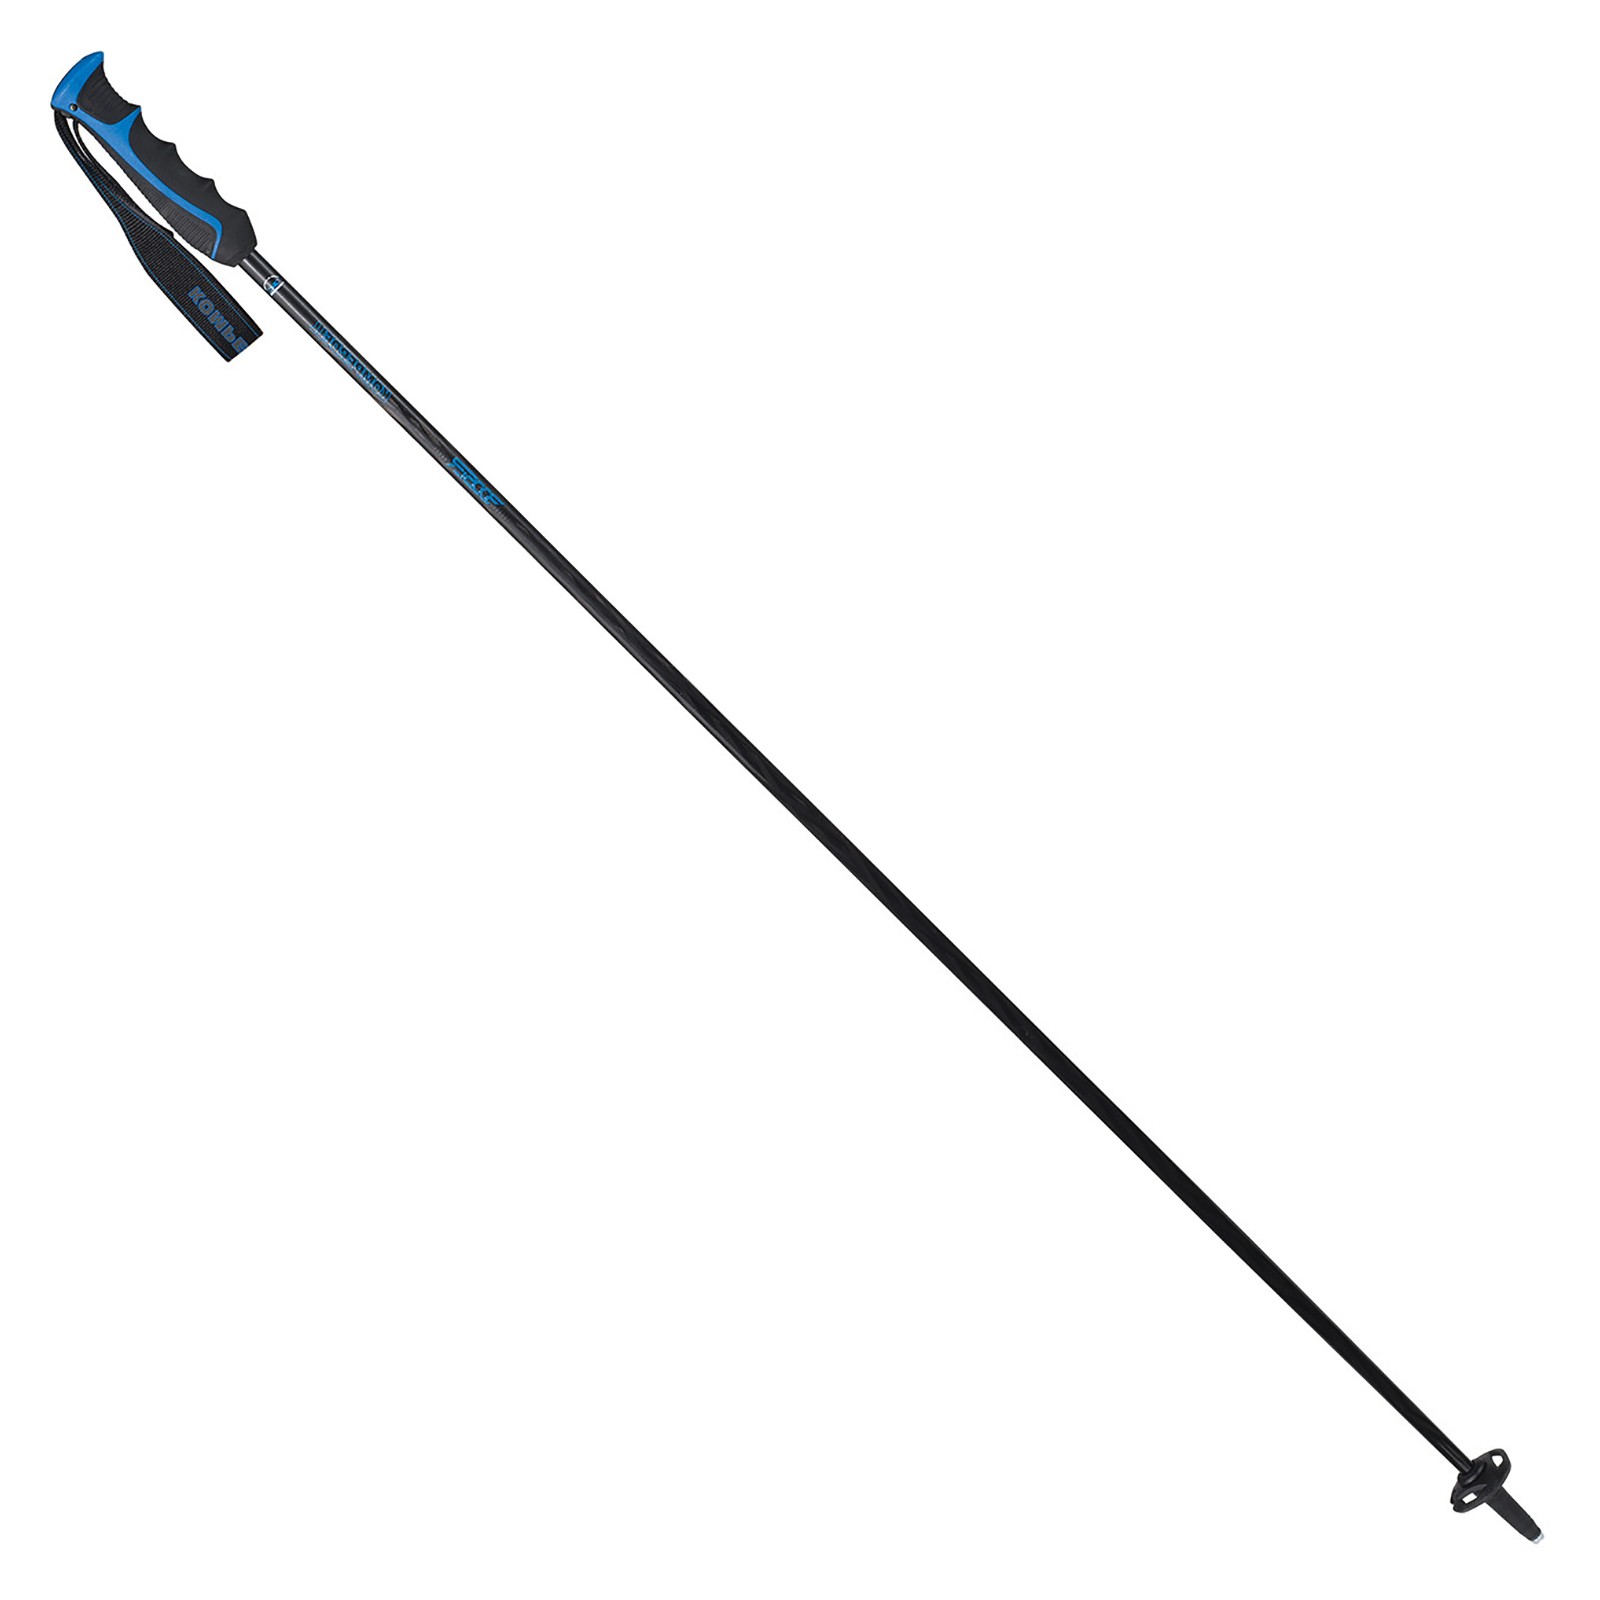 KOMPERDELL Booster Carbon Skistöcke schwarz blau